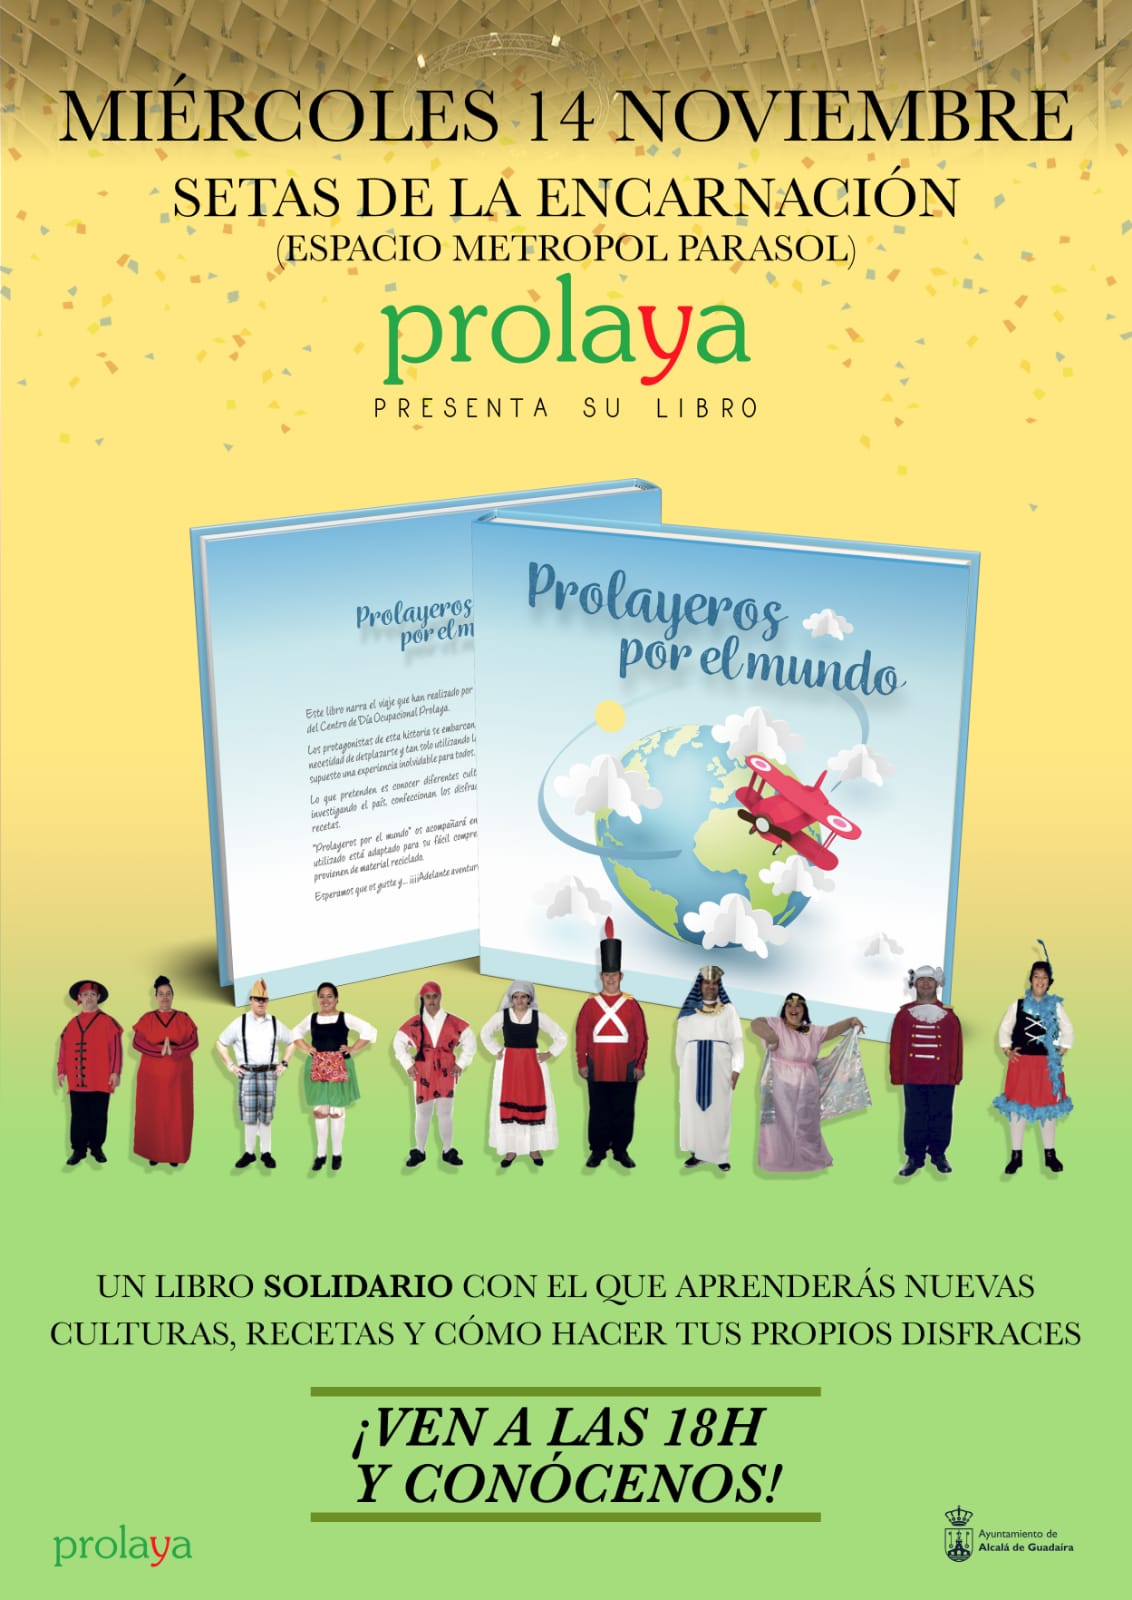 Prolaya presenta «Prolayeros por el mundo»